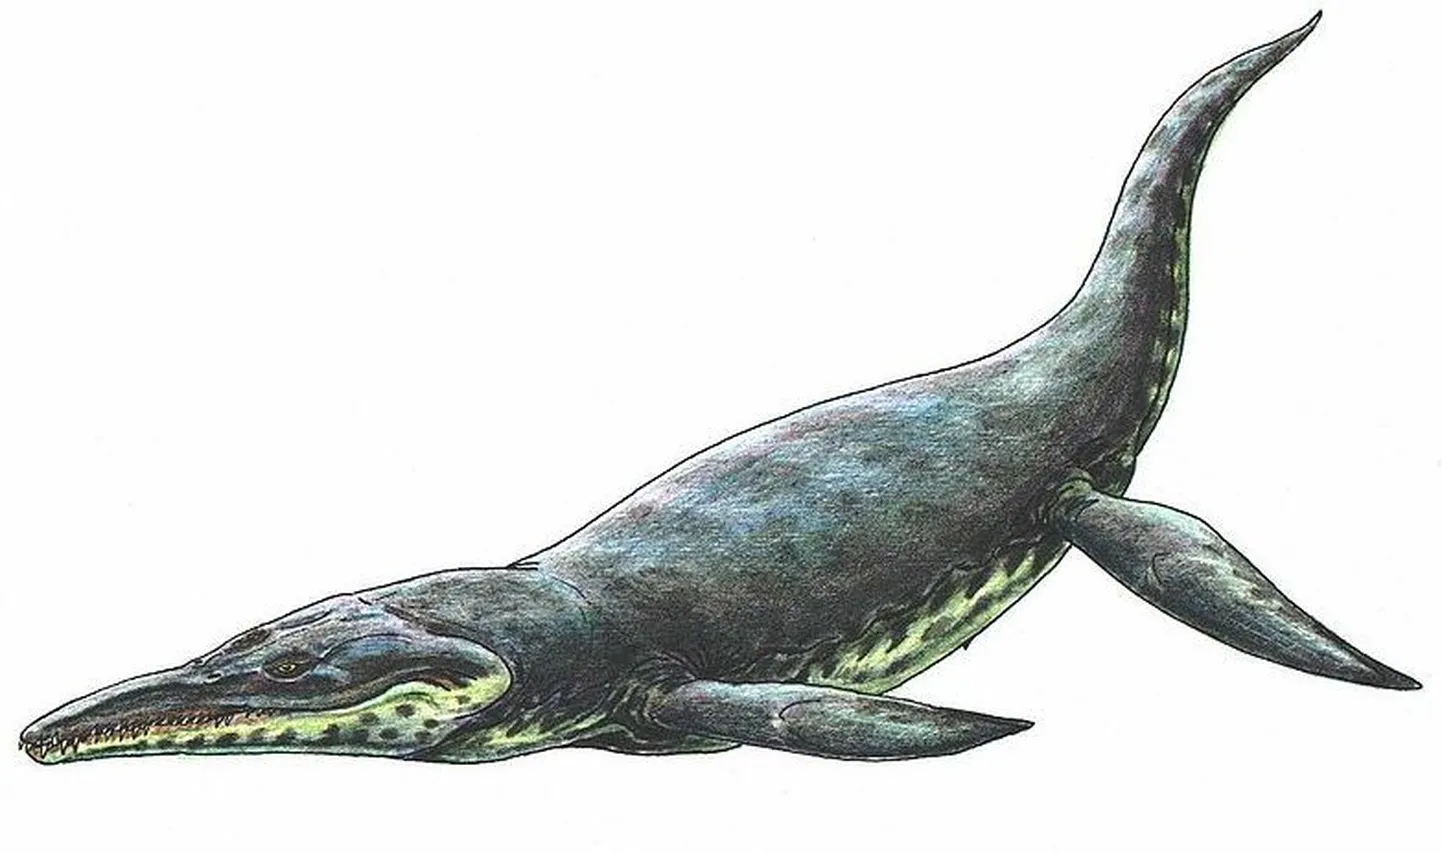 Juuraajastu ookeanis olid kiskjateks Pliosaurus funkei sarnased loomad